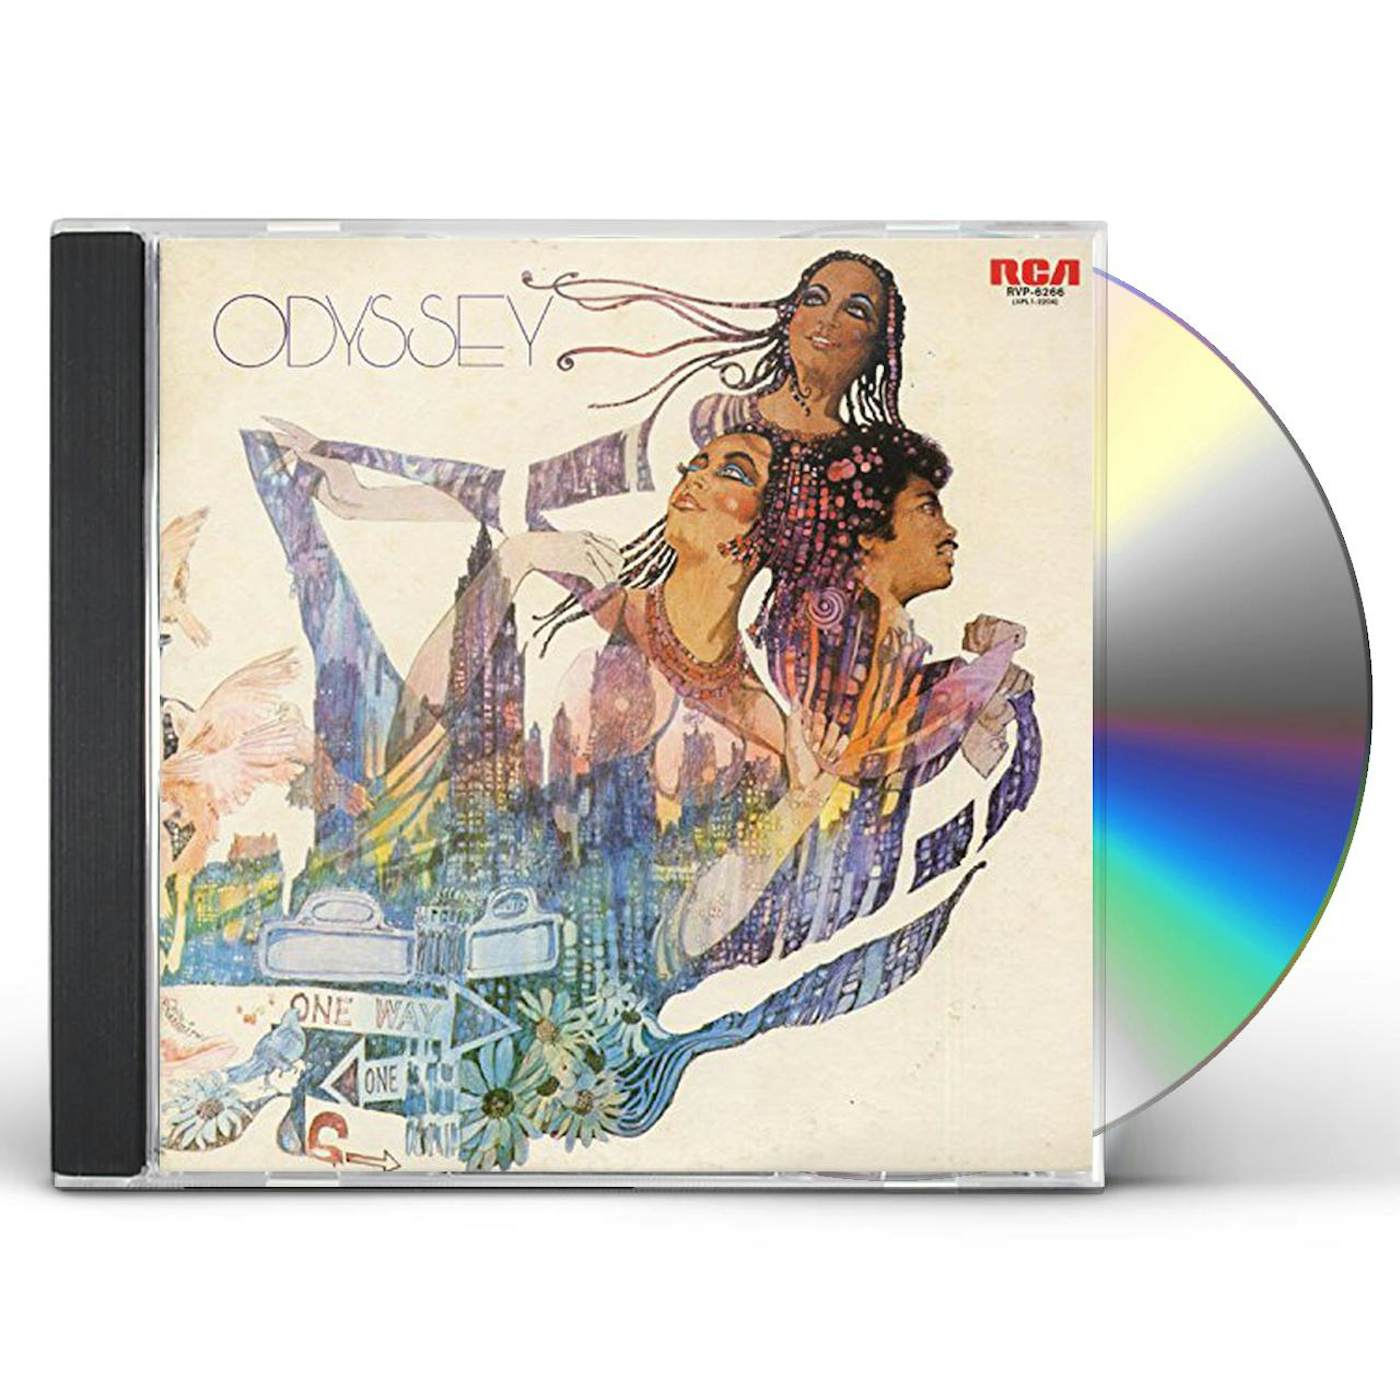 ODYSSEY CD